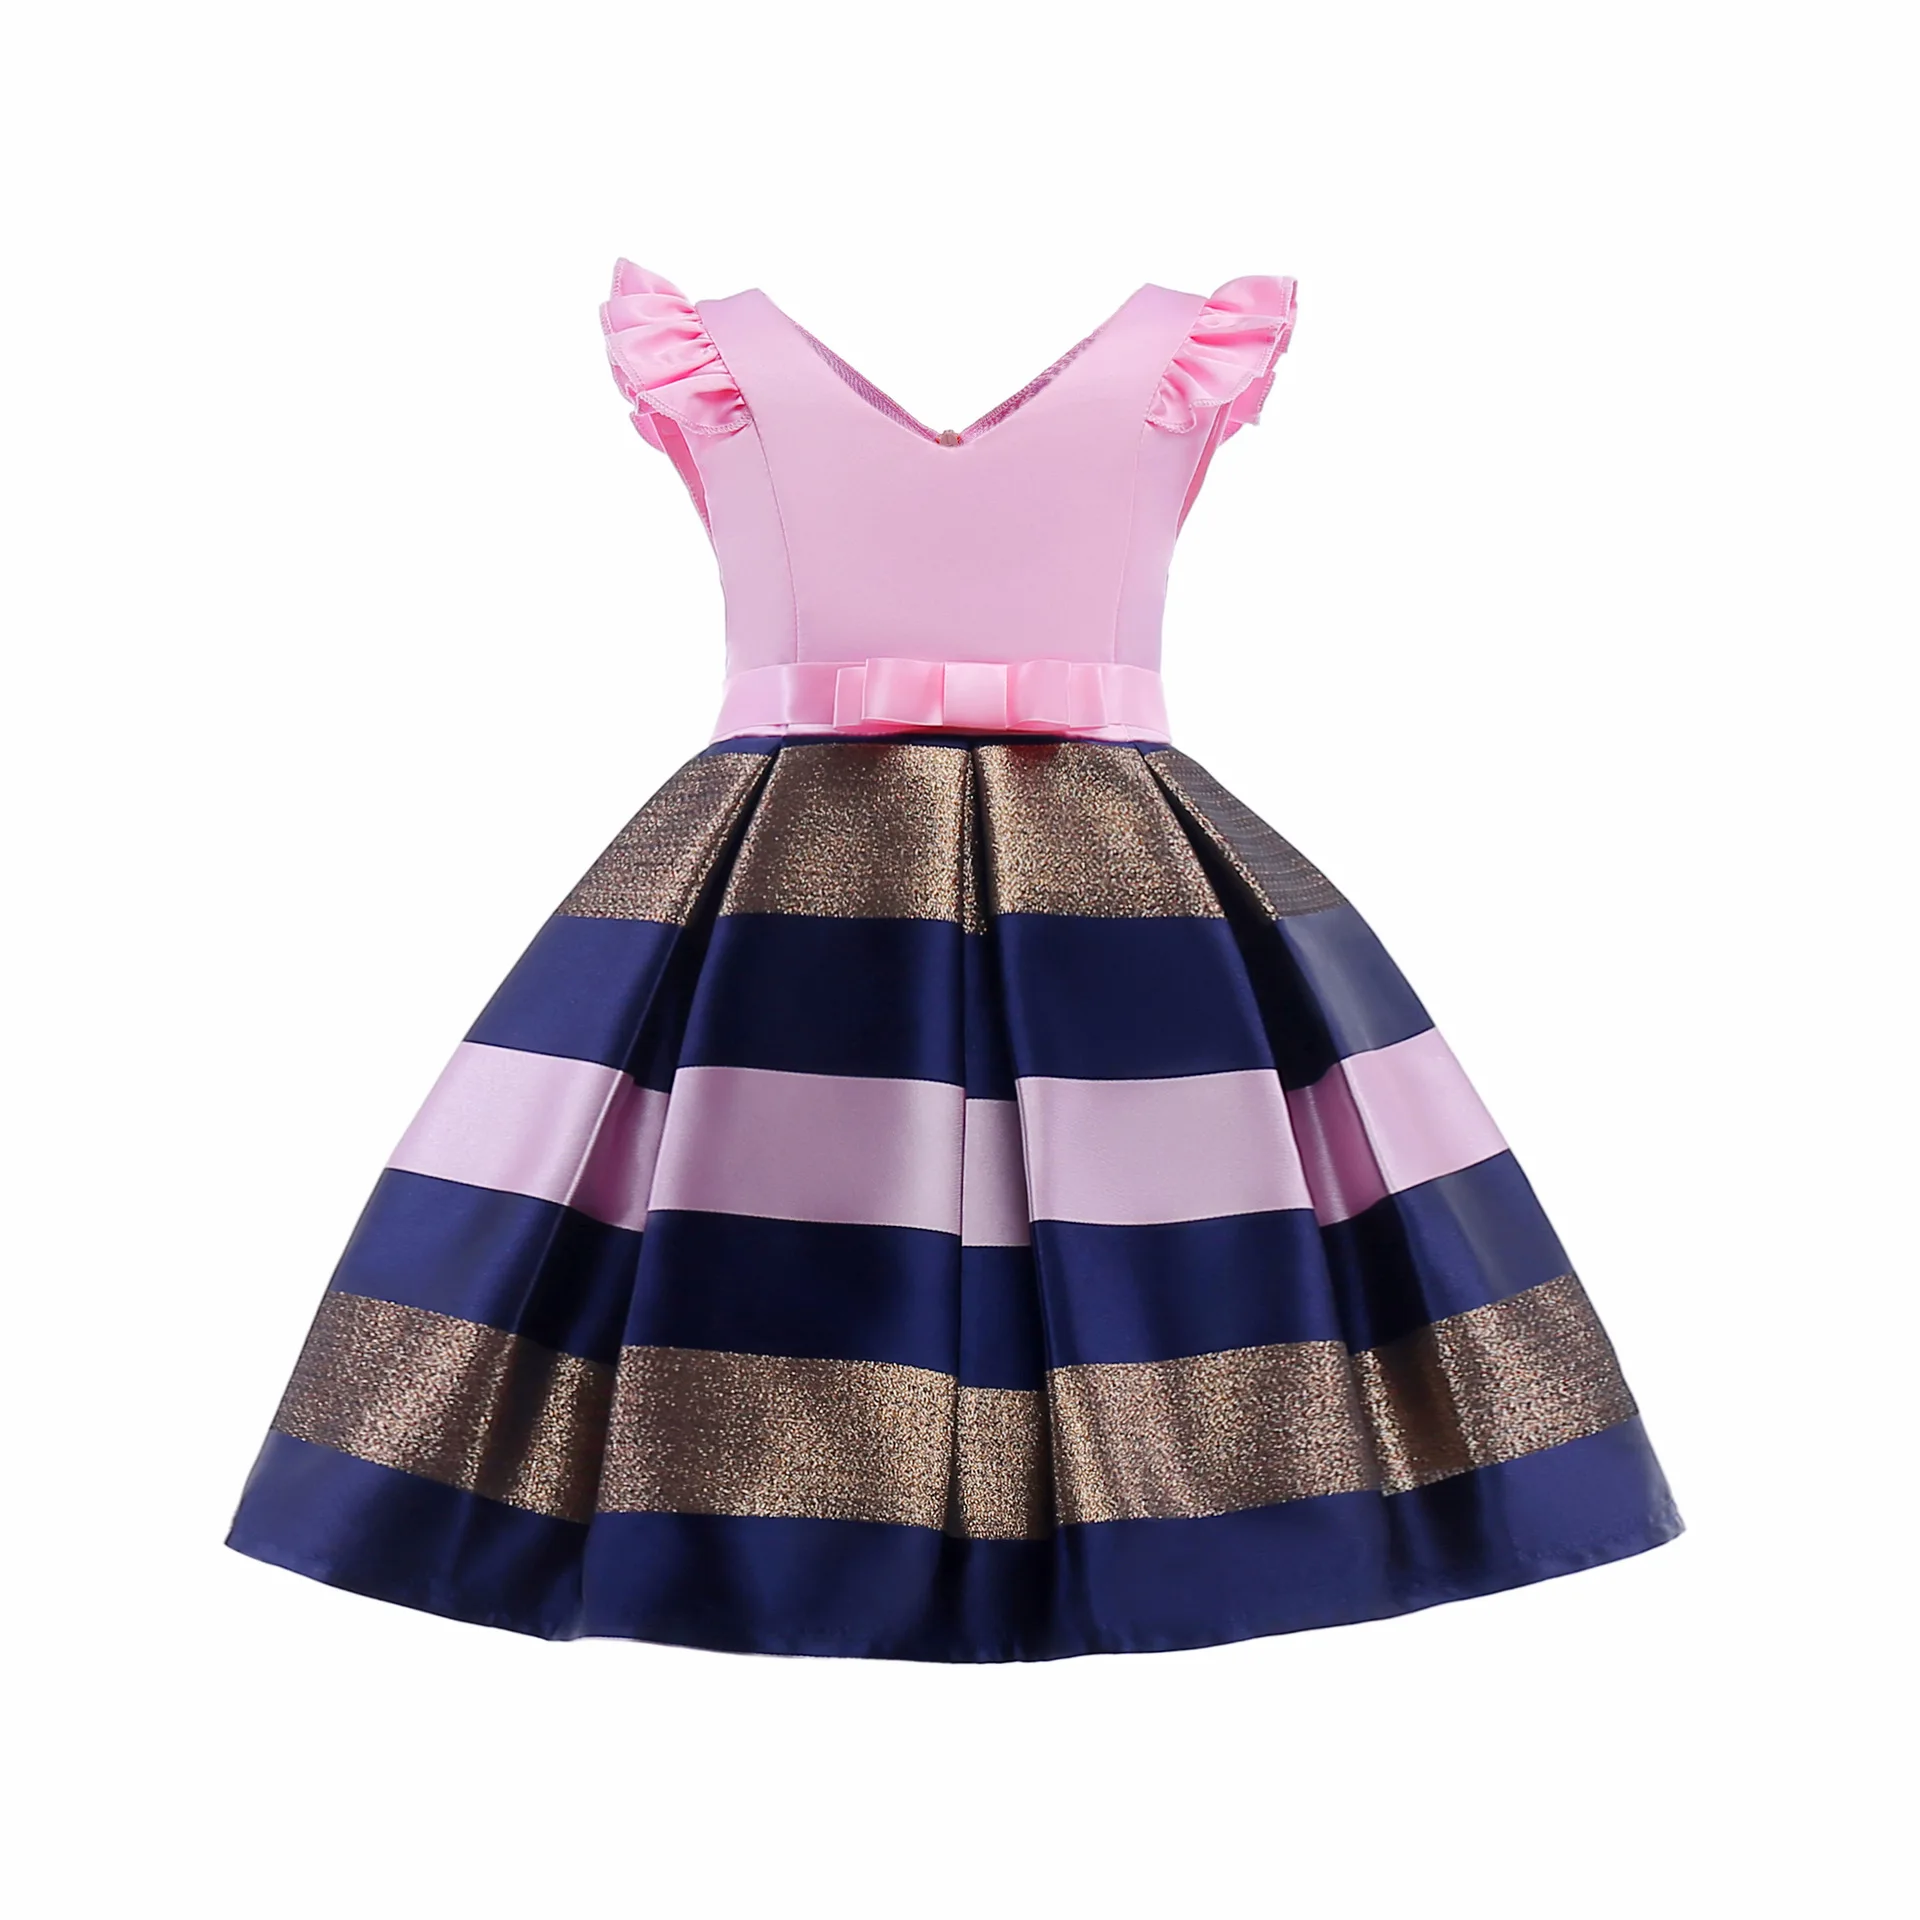 Платья для девочек в европейском стиле, летнее платье для девочек детская одежда для девочек в полоску, платье принцессы для выпускного вечера для детей возрастом от 2 до 10 лет, 3 цвета - Цвет: pink